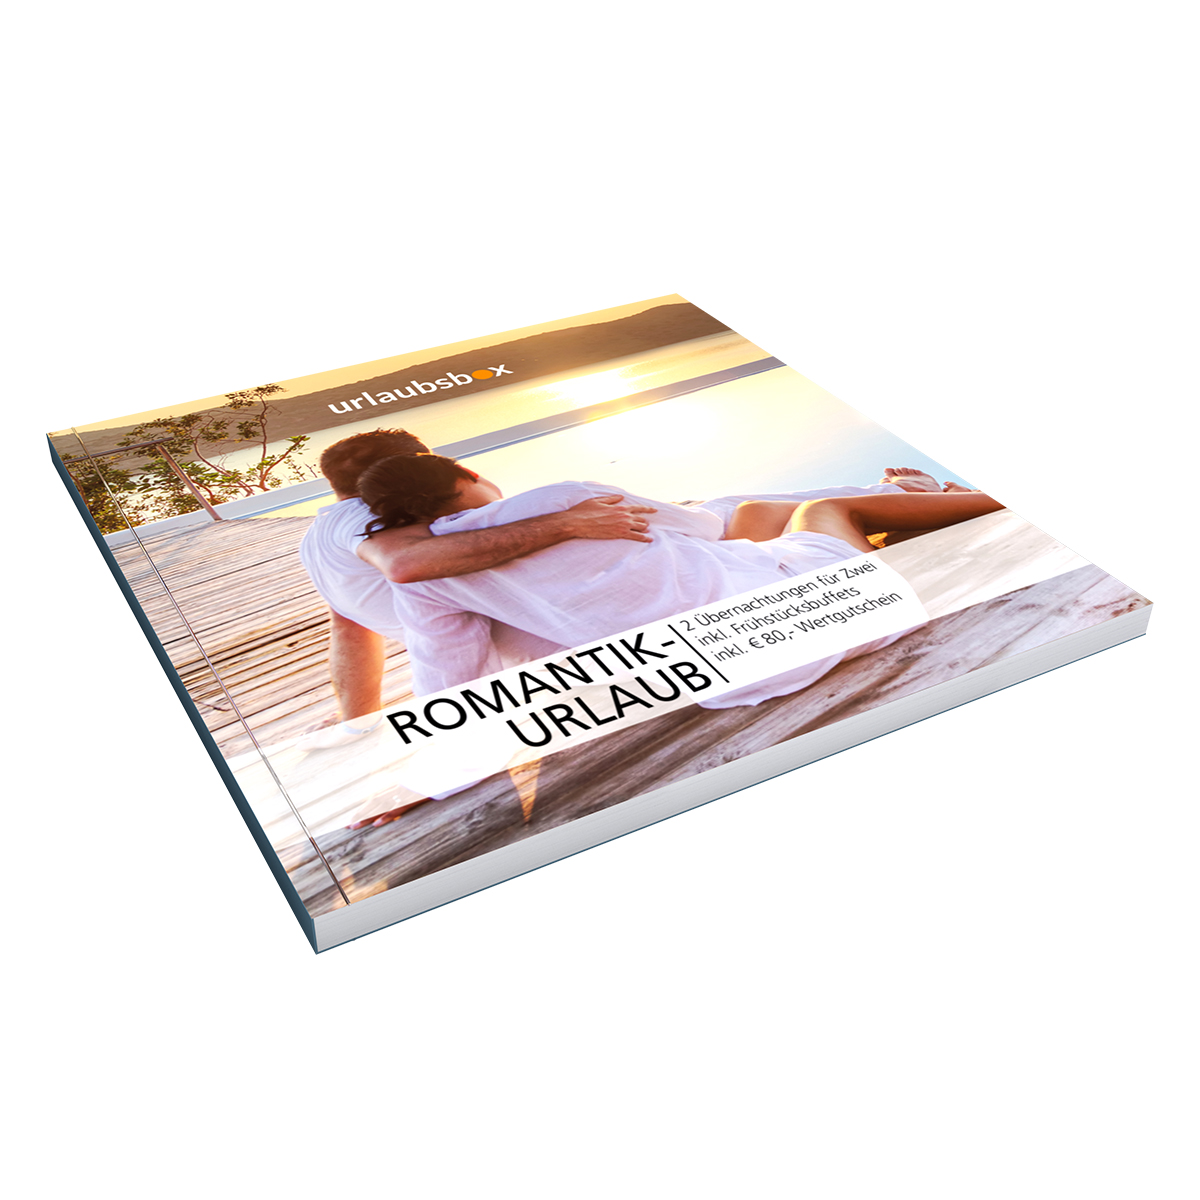 Romantikurlaub - Hotelgutschein Deluxe 3335 - 4